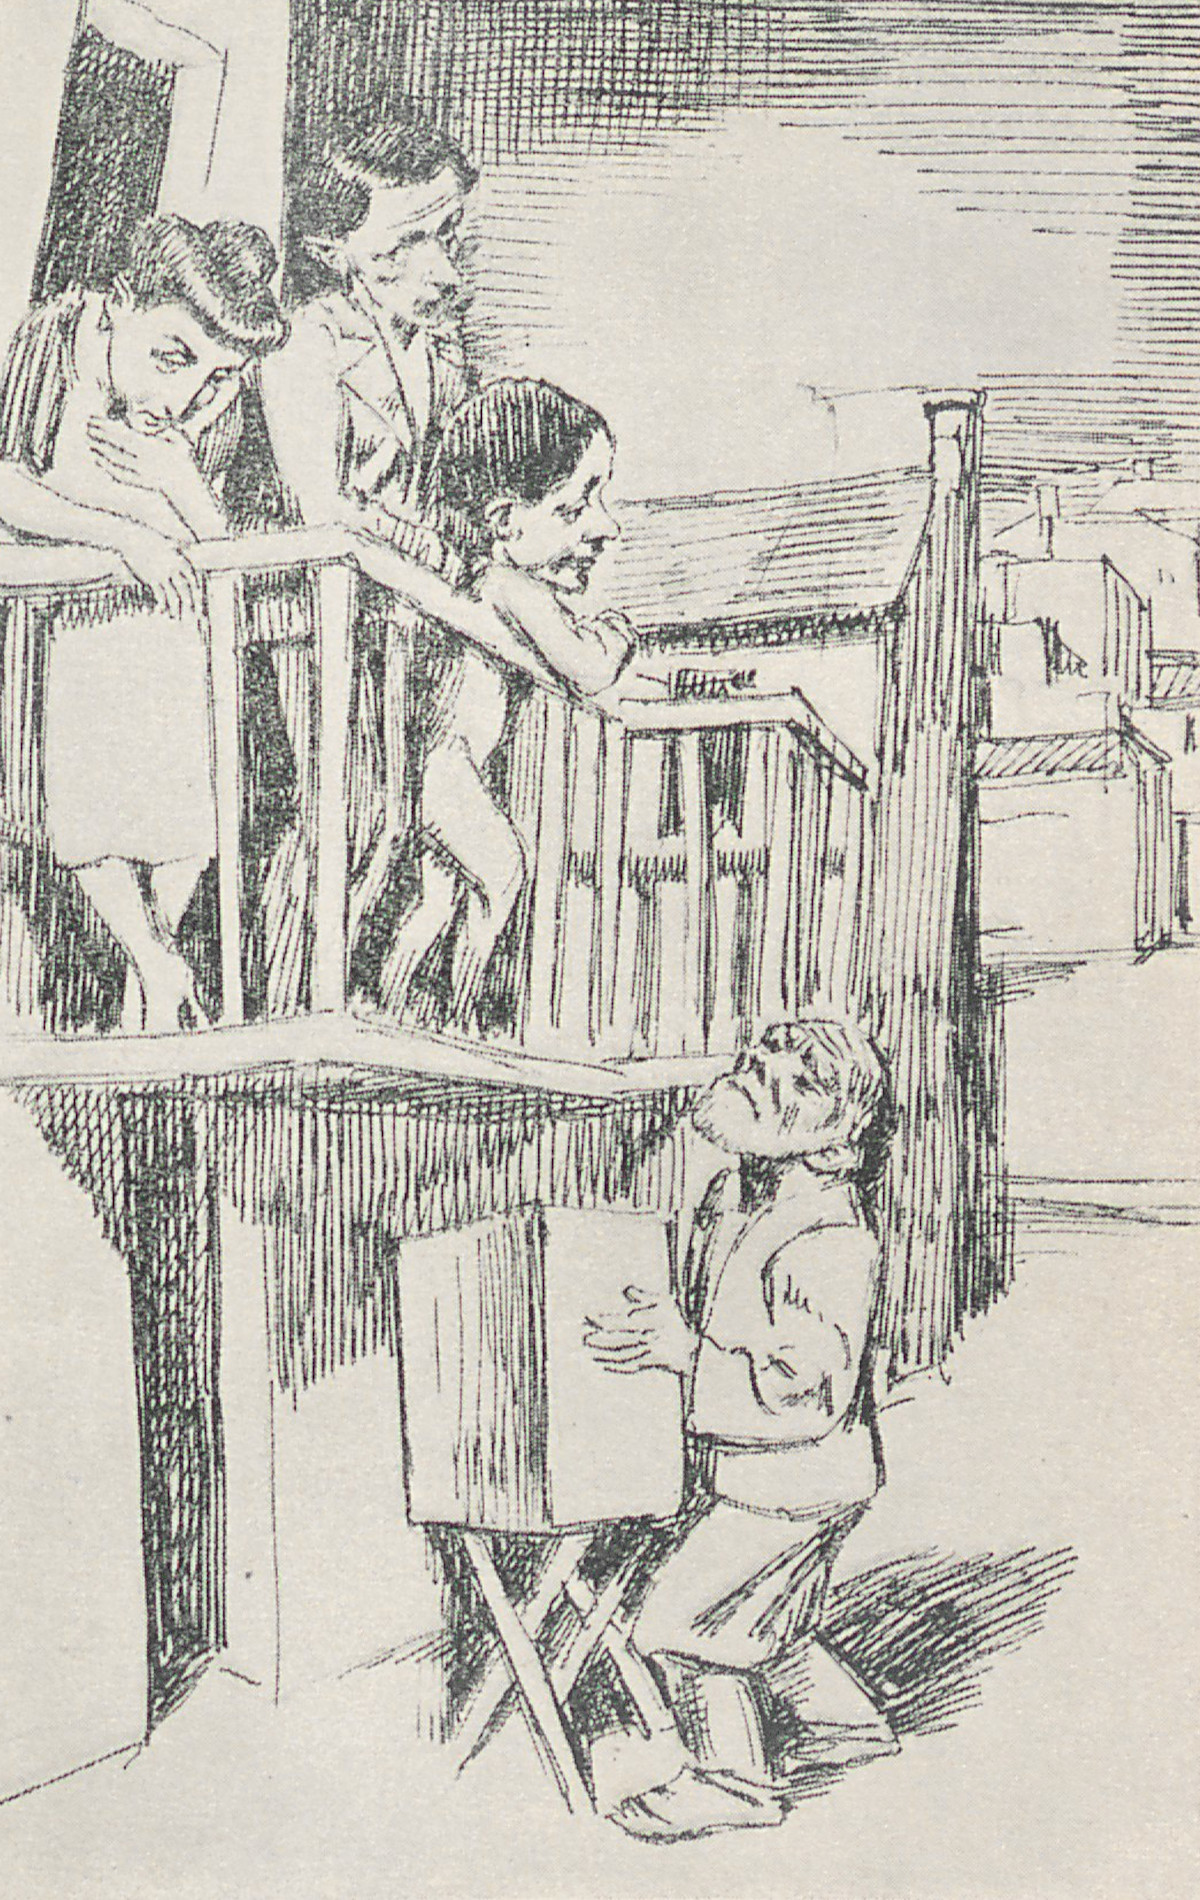 Bruno Schulz, jedna z ilustracji do zbioru opowiadań "Sanatorium pod klepsydrą", Warszawa 1937 r. Fot. Polona 